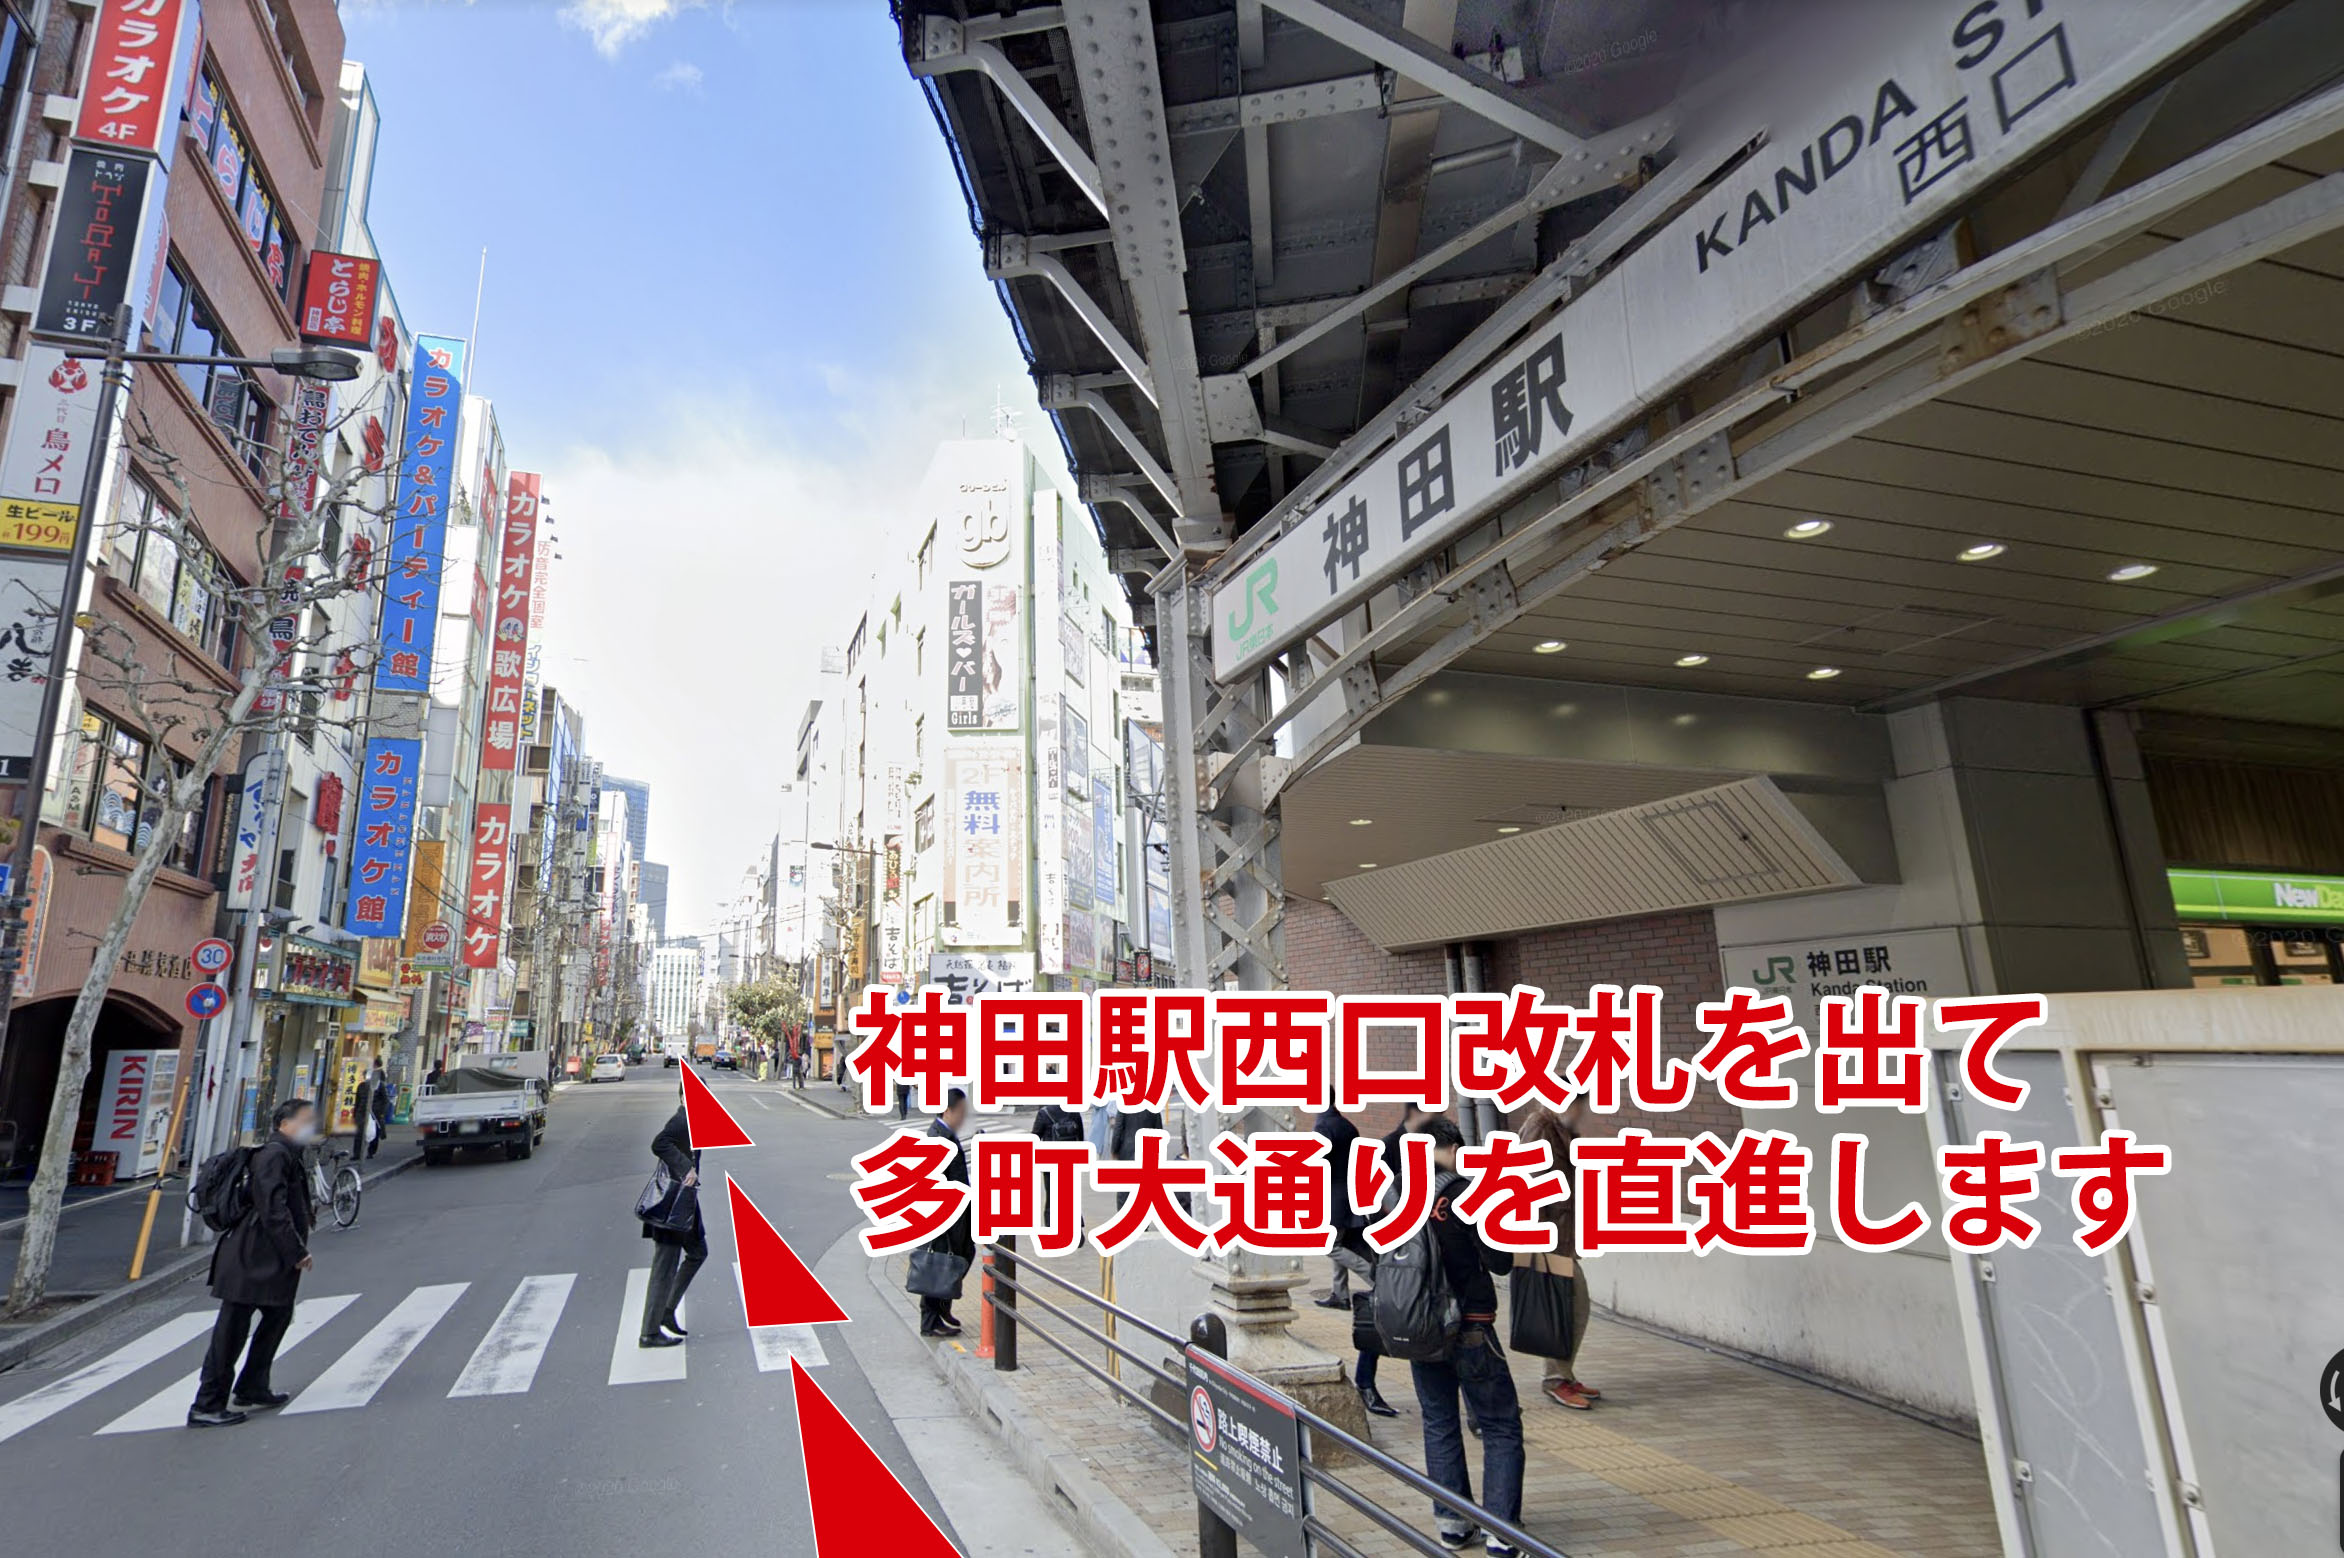 神田駅西口改札を出て、多町大通りを直進する。